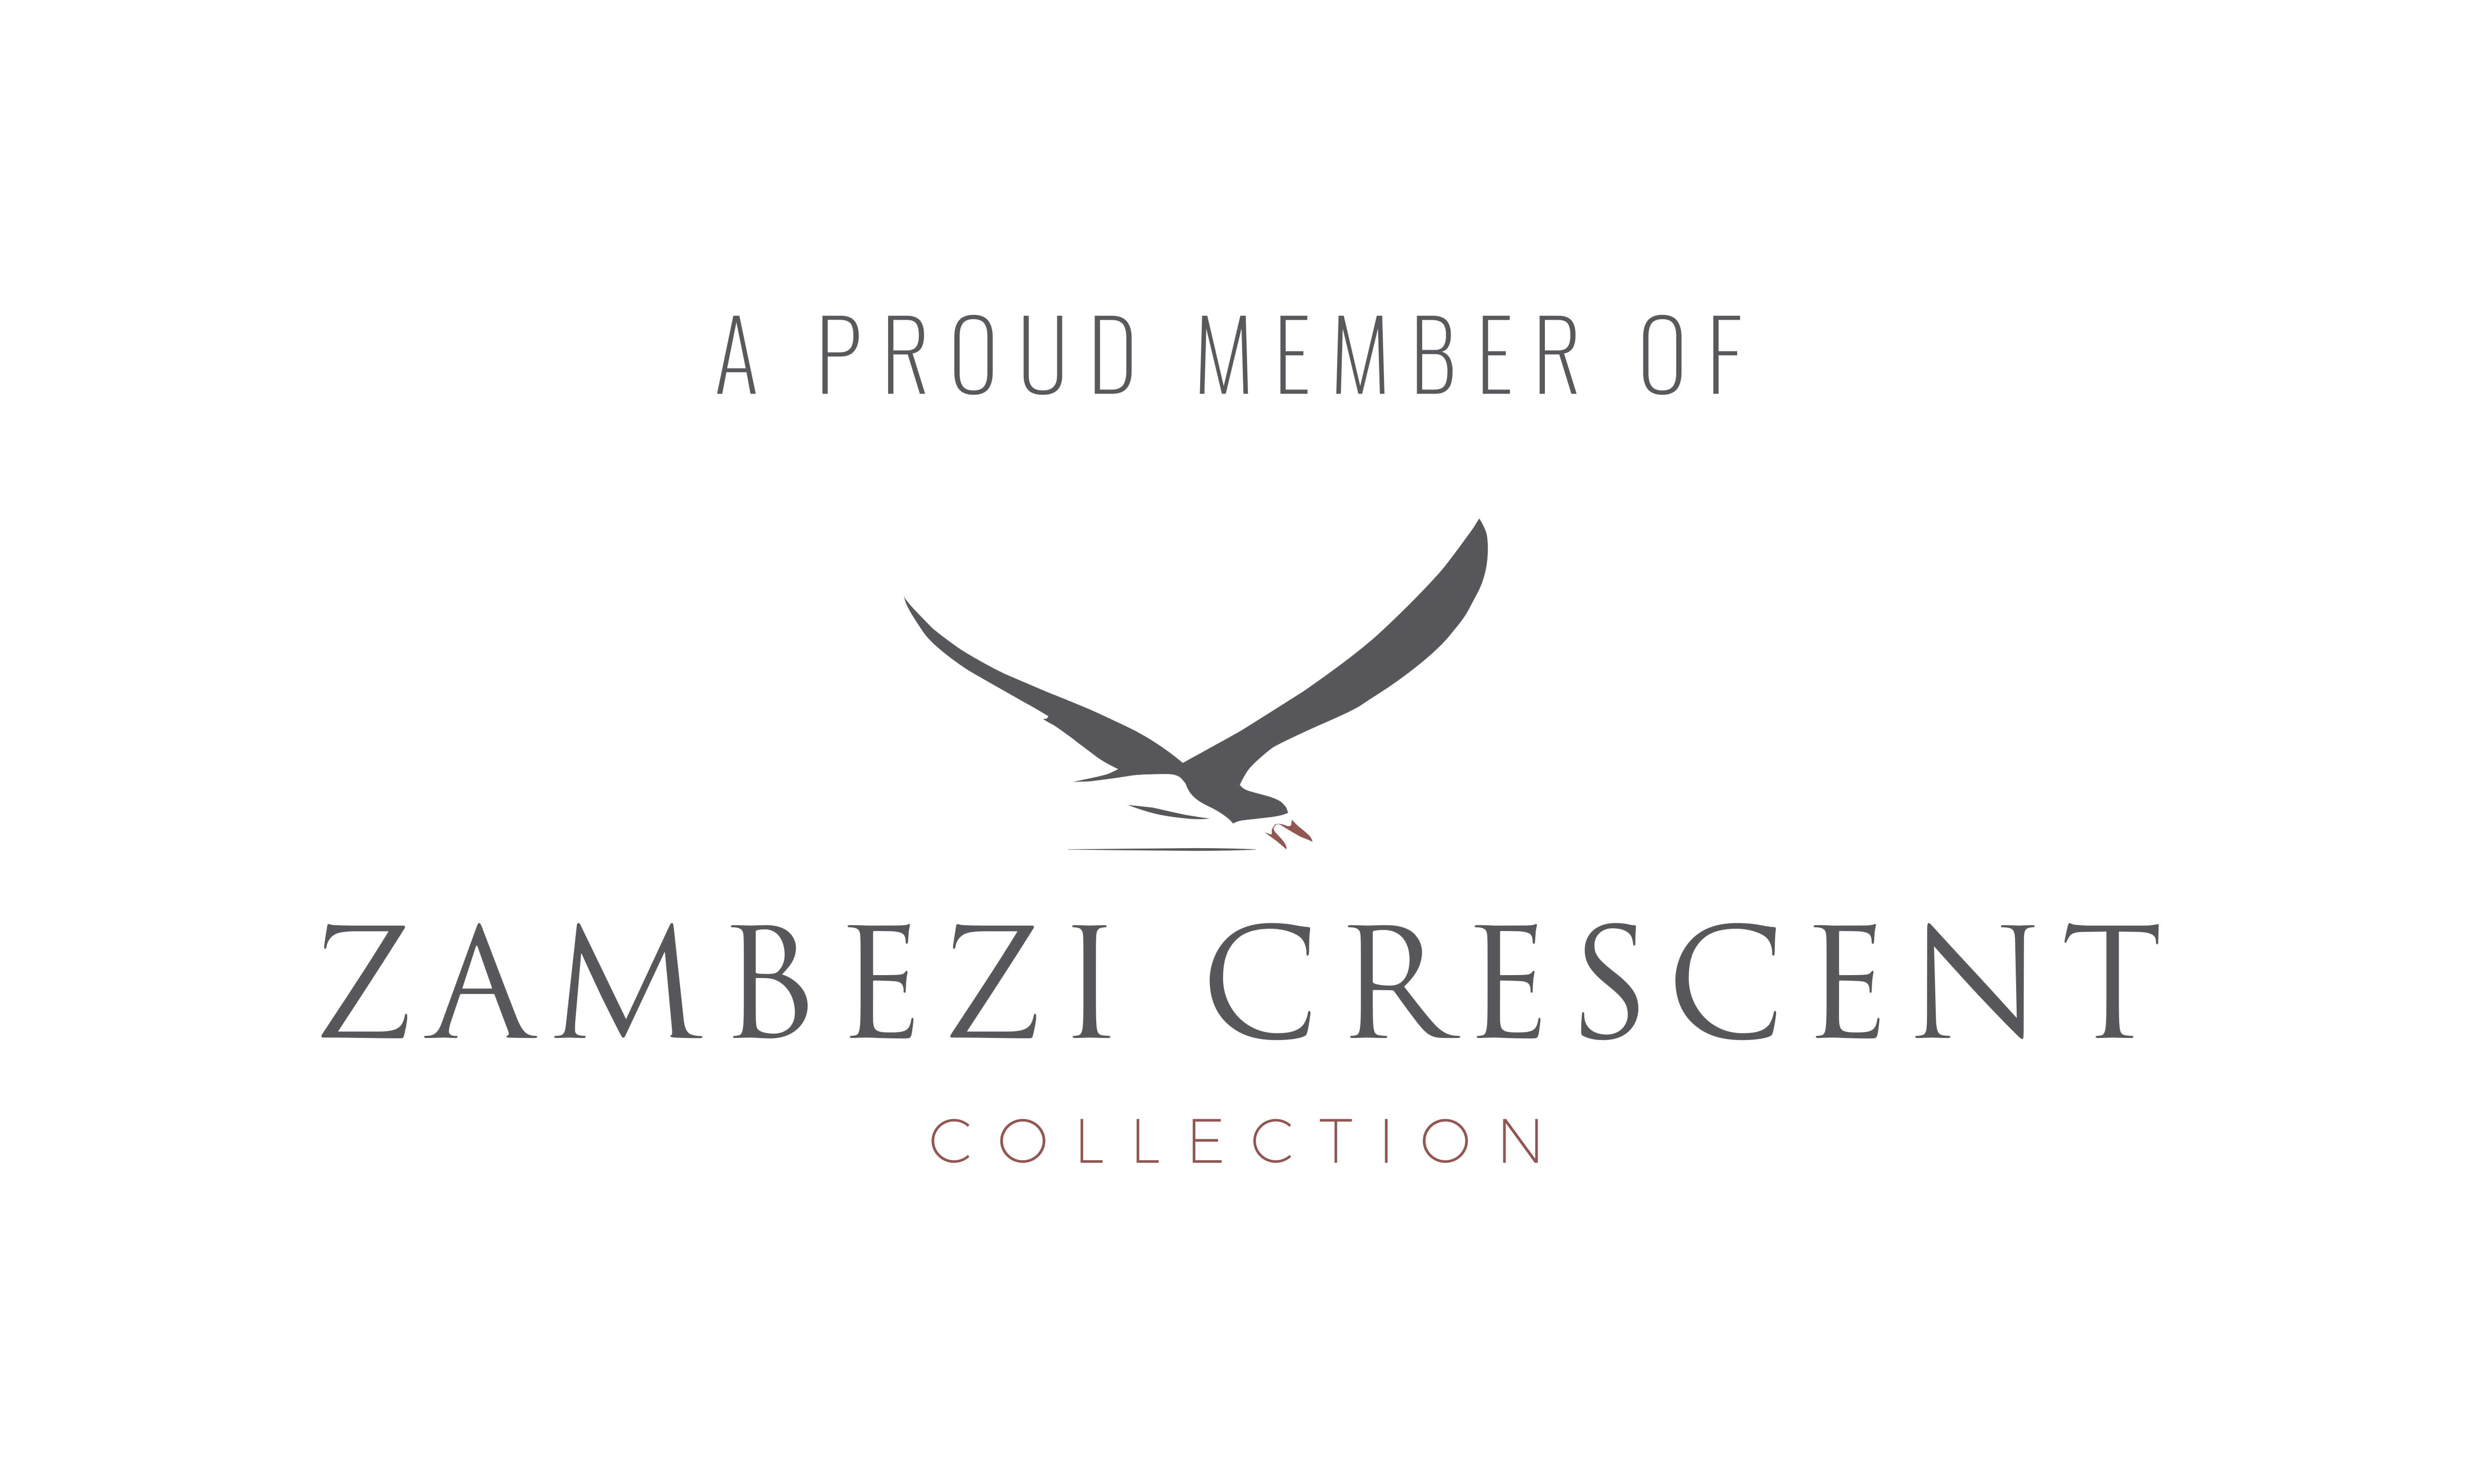 Zambezi Crescent Collection